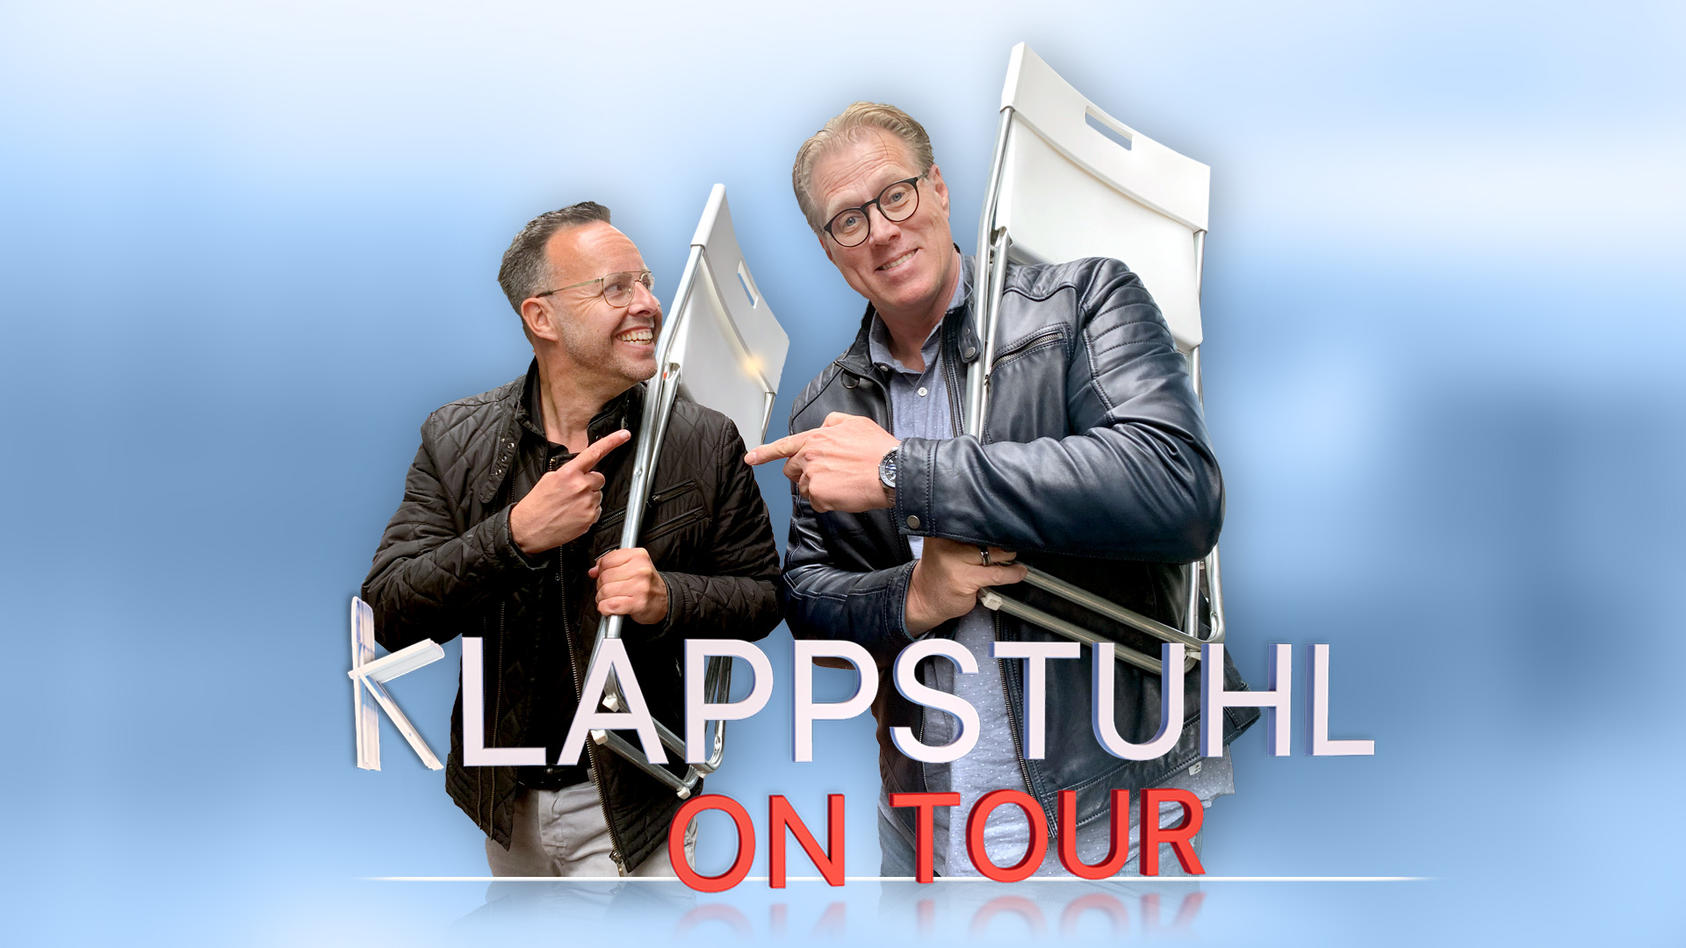 Till Quitmann trifft Norbert Heisterkamp Klappstuhl on Tour